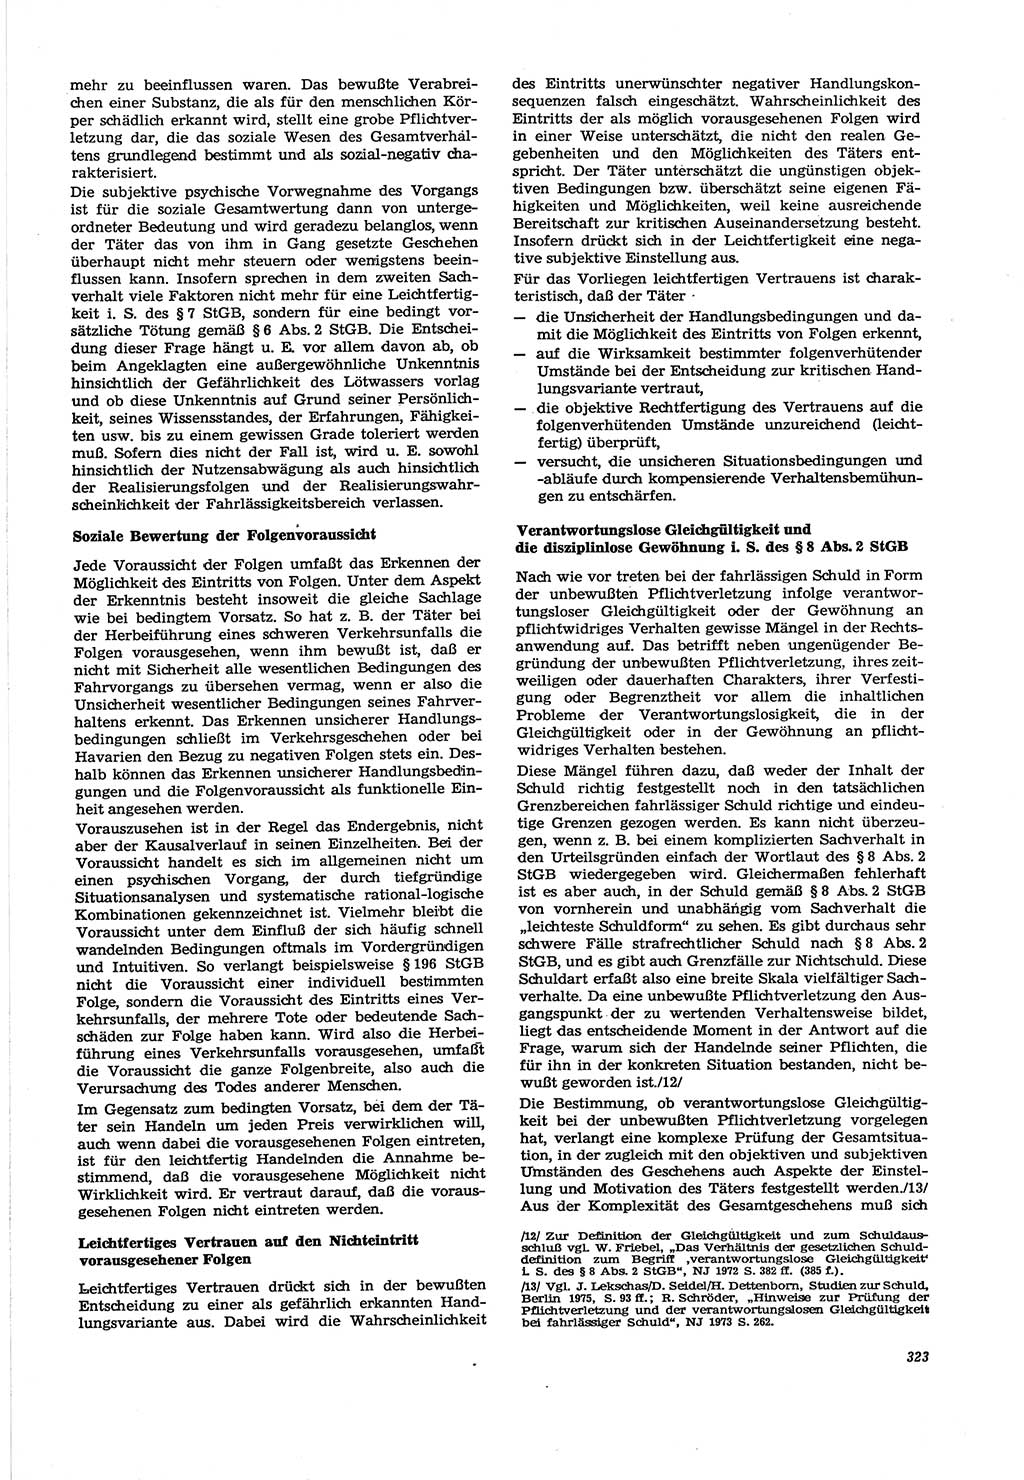 Neue Justiz (NJ), Zeitschrift für Recht und Rechtswissenschaft [Deutsche Demokratische Republik (DDR)], 30. Jahrgang 1976, Seite 323 (NJ DDR 1976, S. 323)